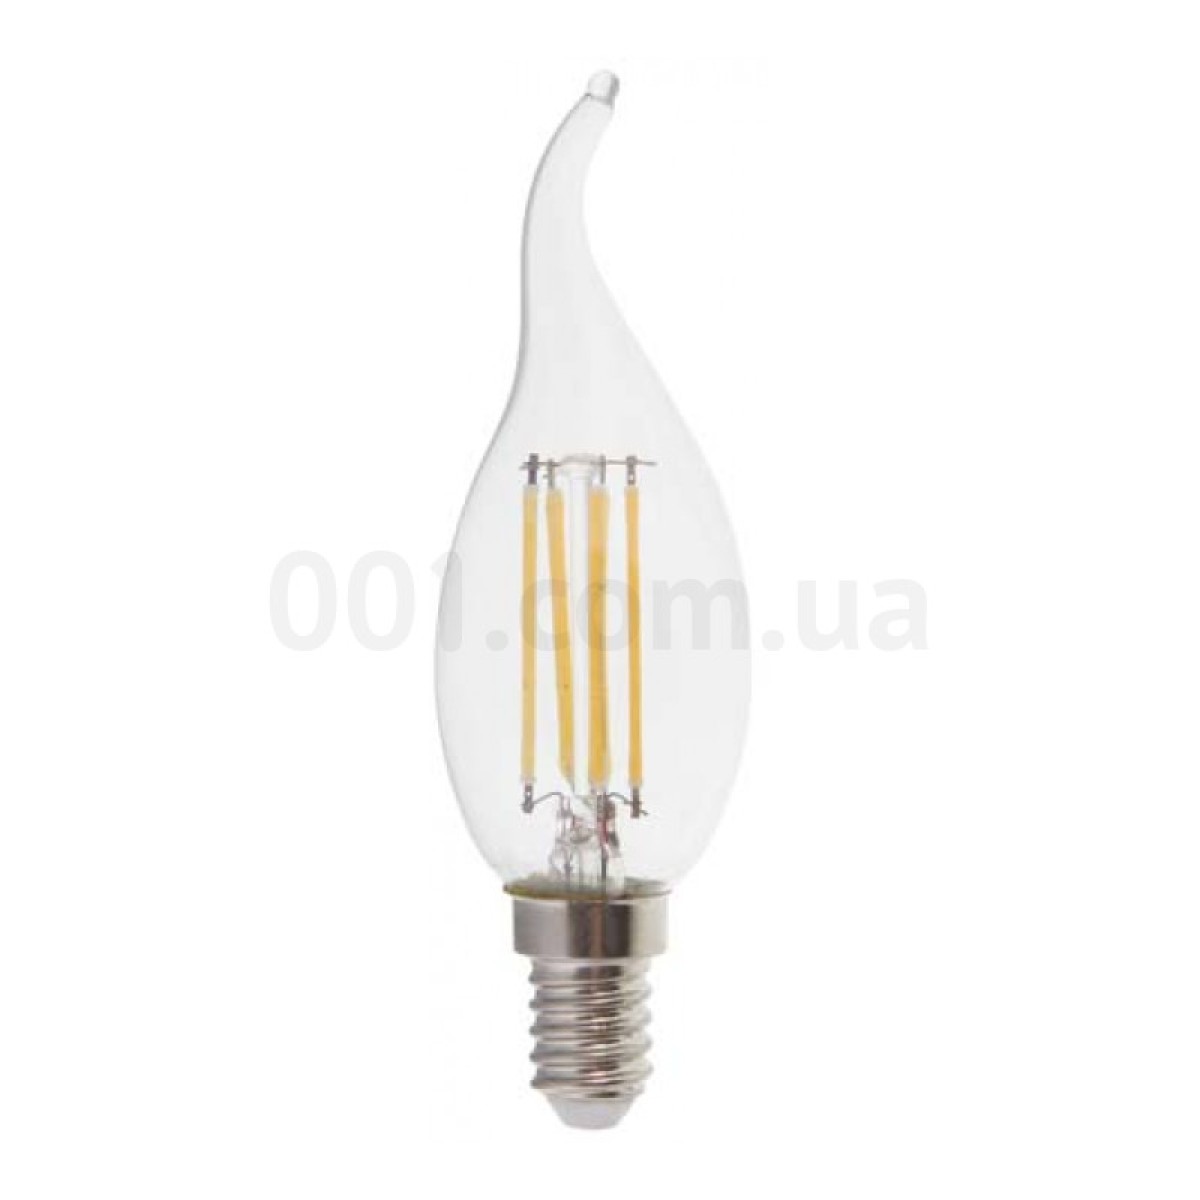 Світлодіодна лампа LB-59 CF37 (свічка на вітрі) філамент 4Вт 2700K E14, Feron 256_256.jpg